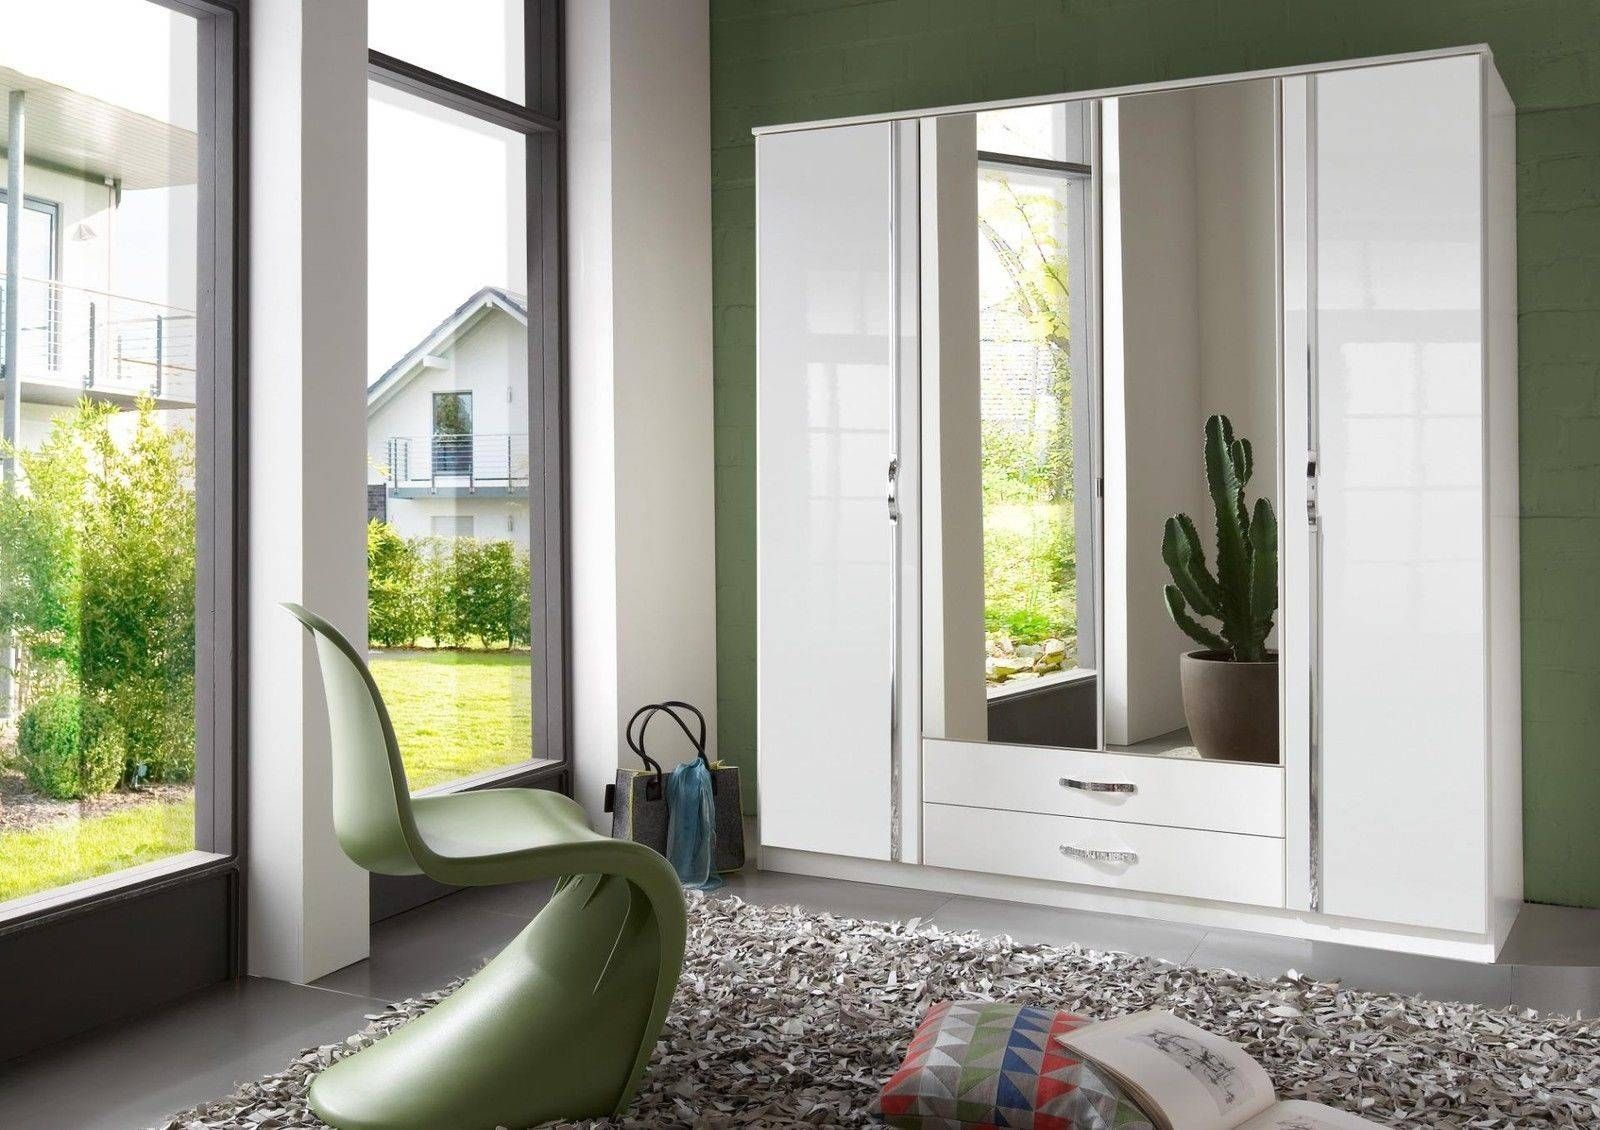 Slumberhaus 'trio' White Gloss, Chrome & Mirror 4 Door 2 Drawer For Black Gloss 3 Door Wardrobes (View 15 of 15)